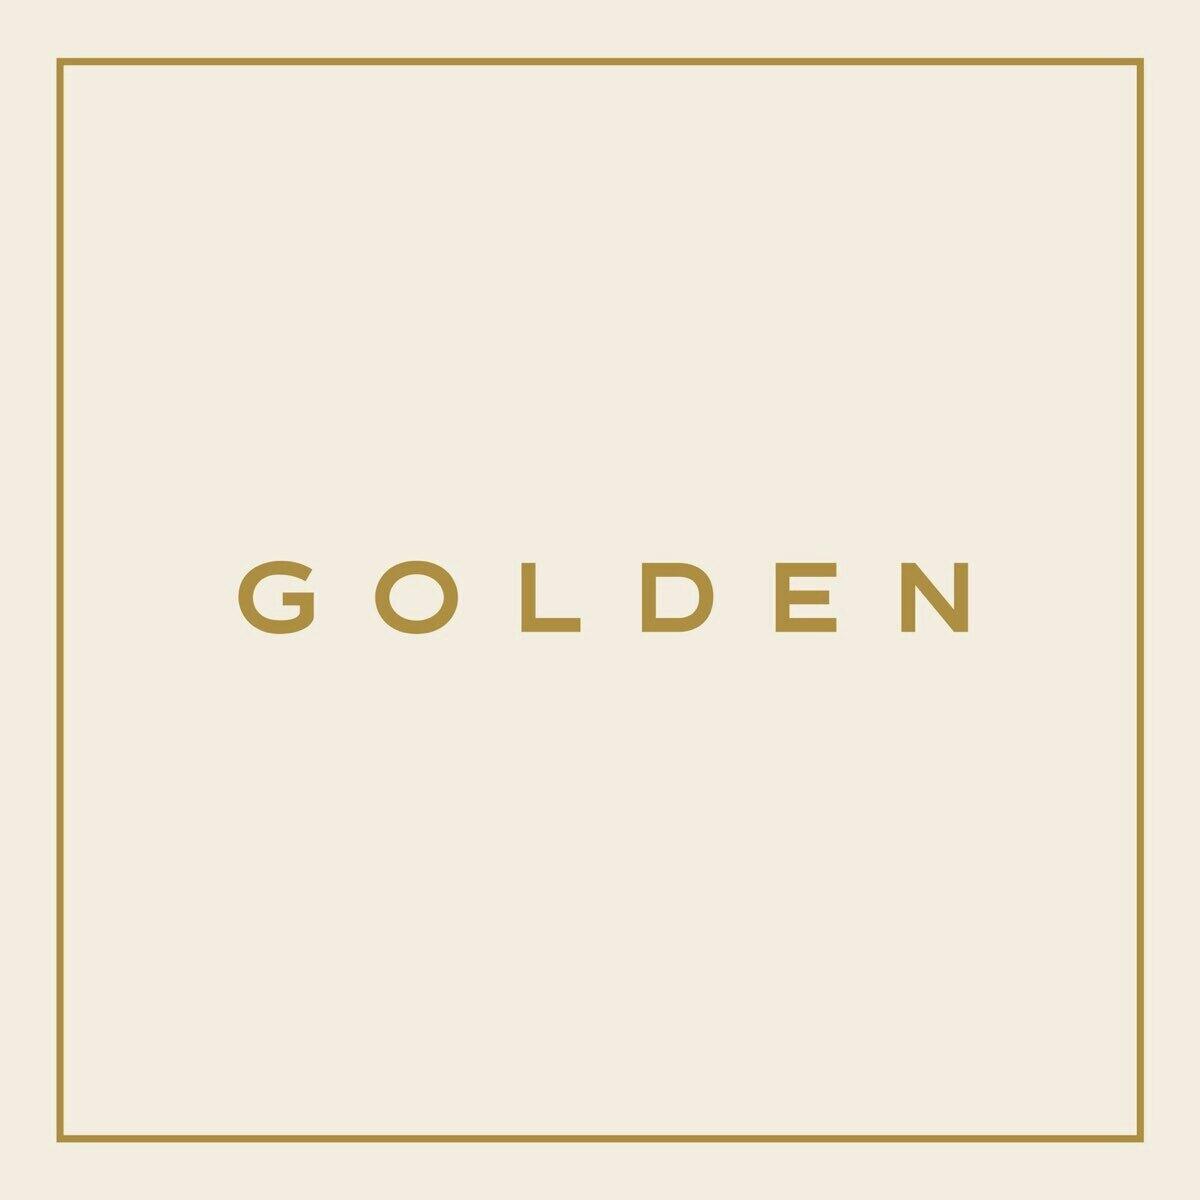 10 records Jung Kook broke ahead of GOLDEN album launch